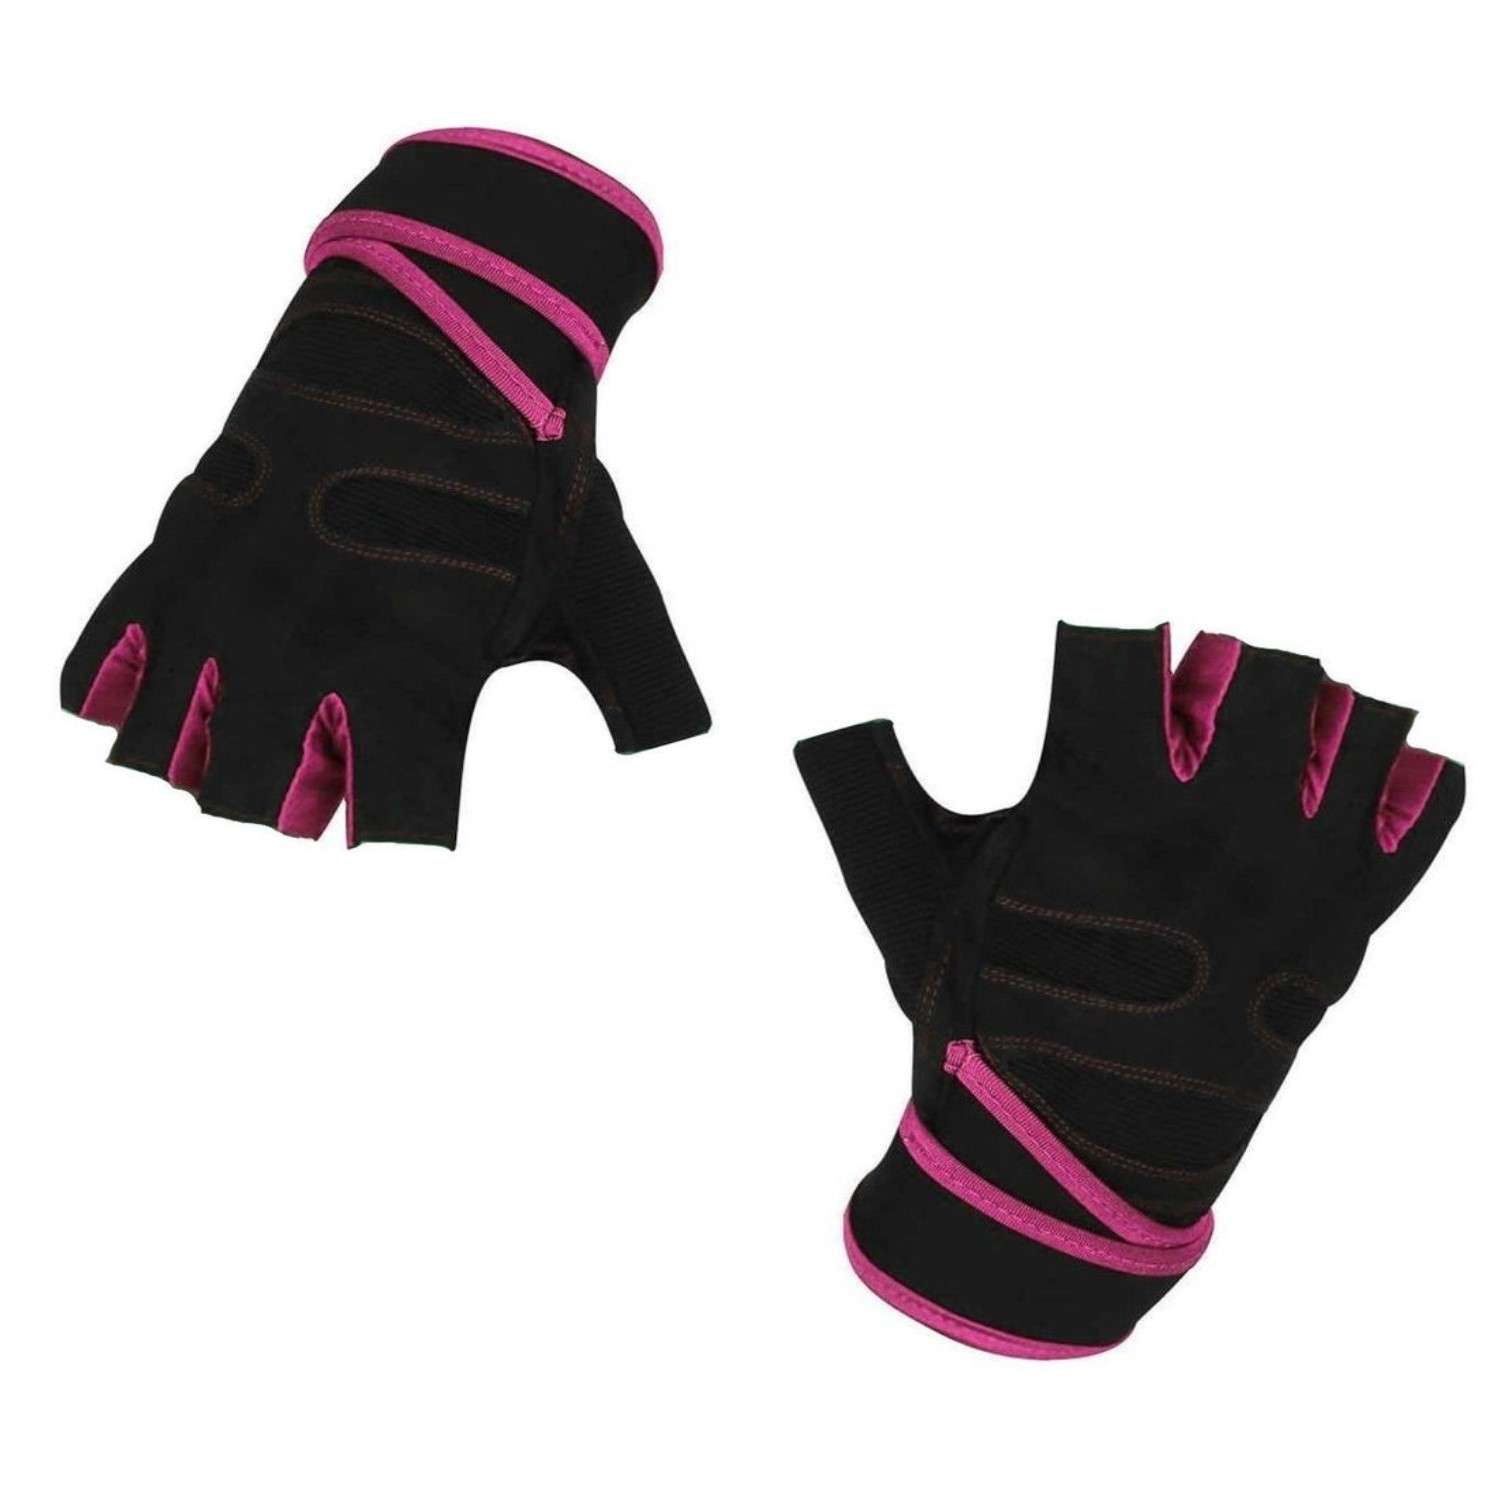 Нейлоновые перчатки NPOSS противоскользящие розовые размер L - фото 1